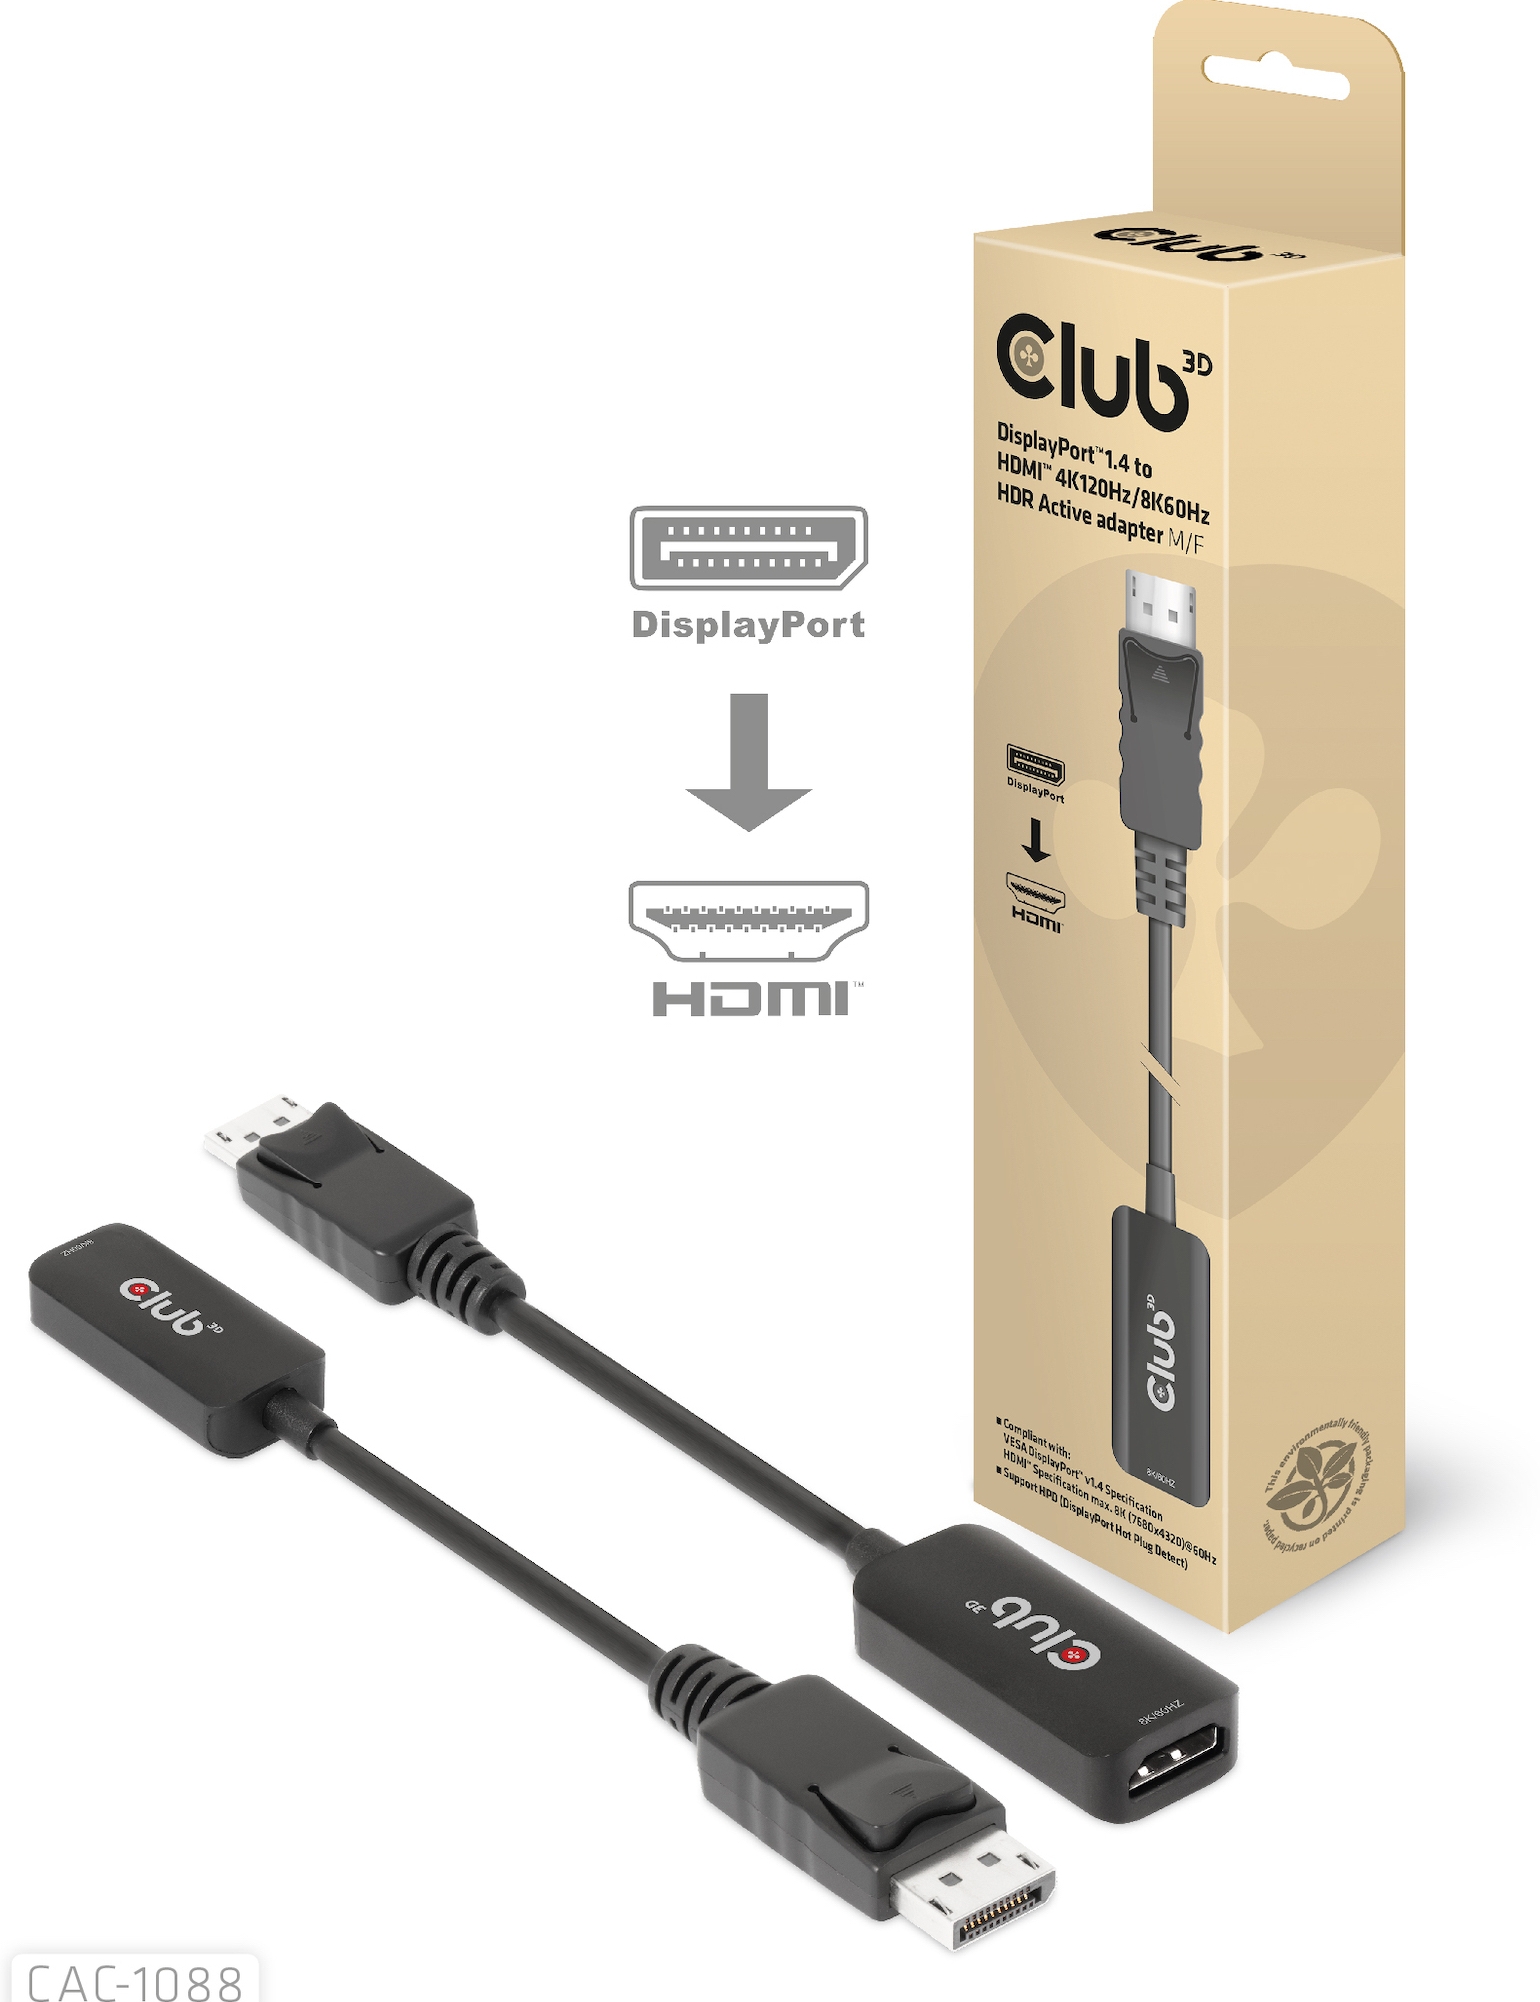 Club 3D - Videoadapter